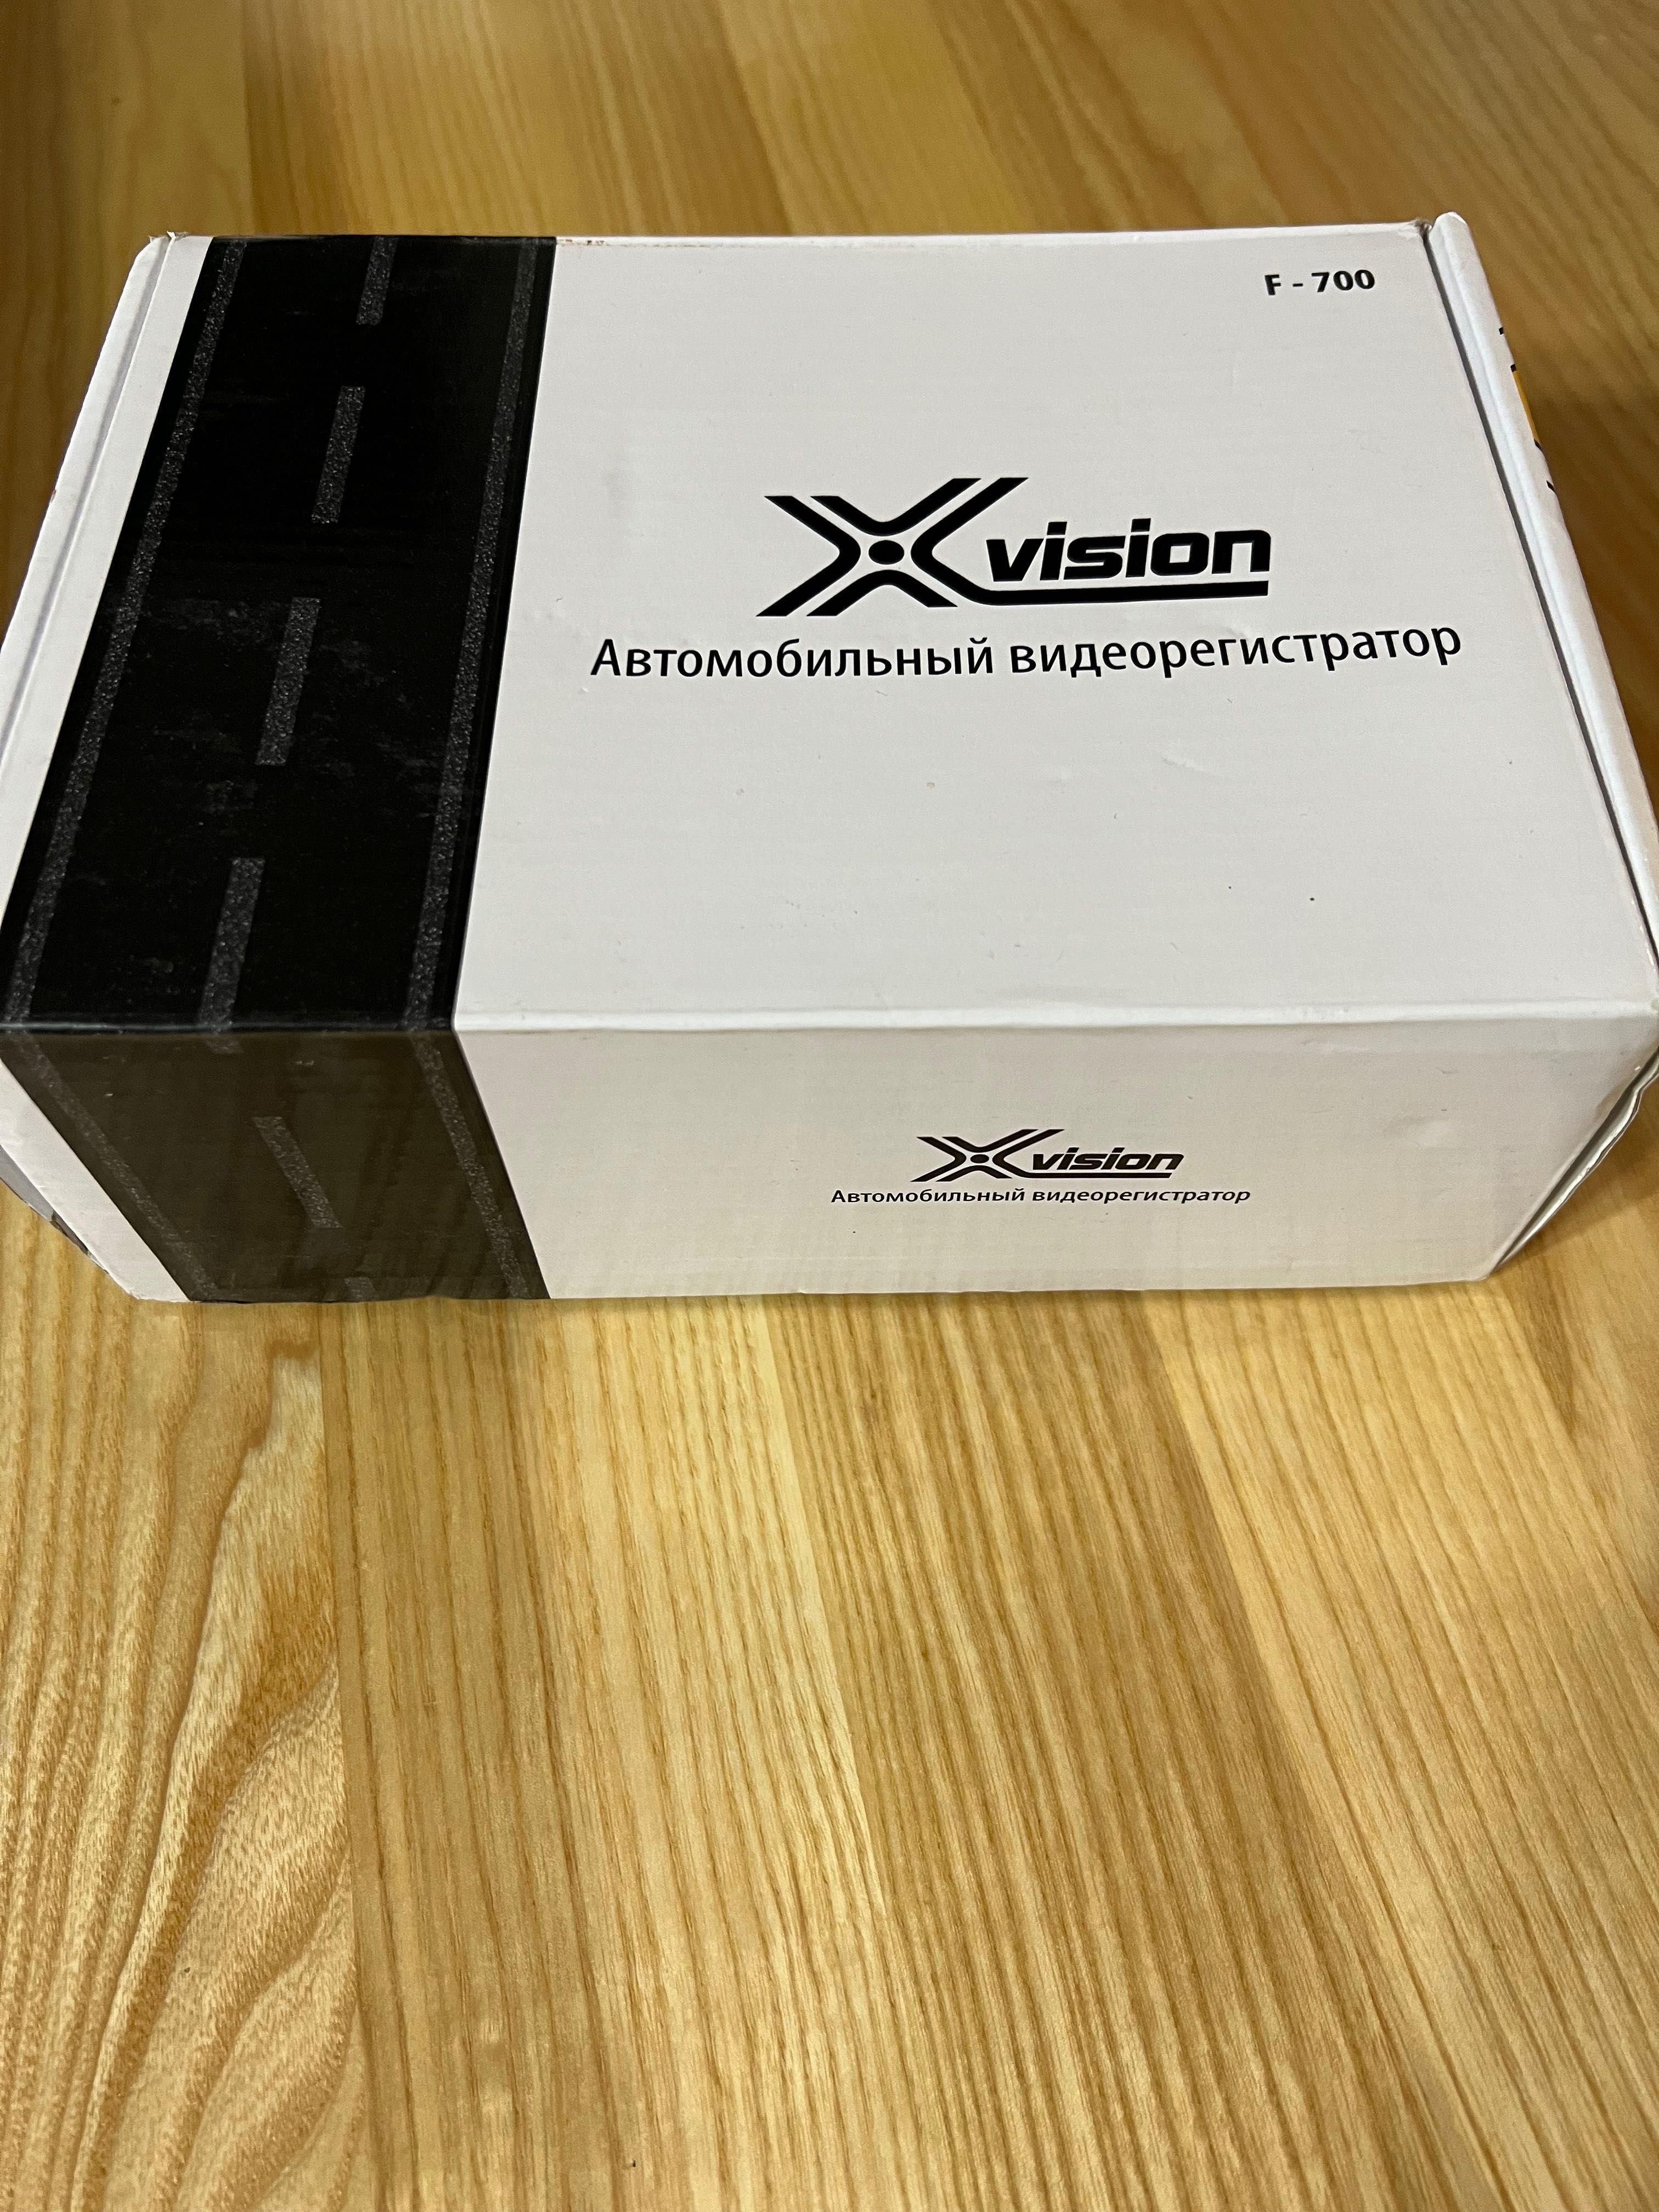 Відеореєстратор X-vision F-700 (новий)